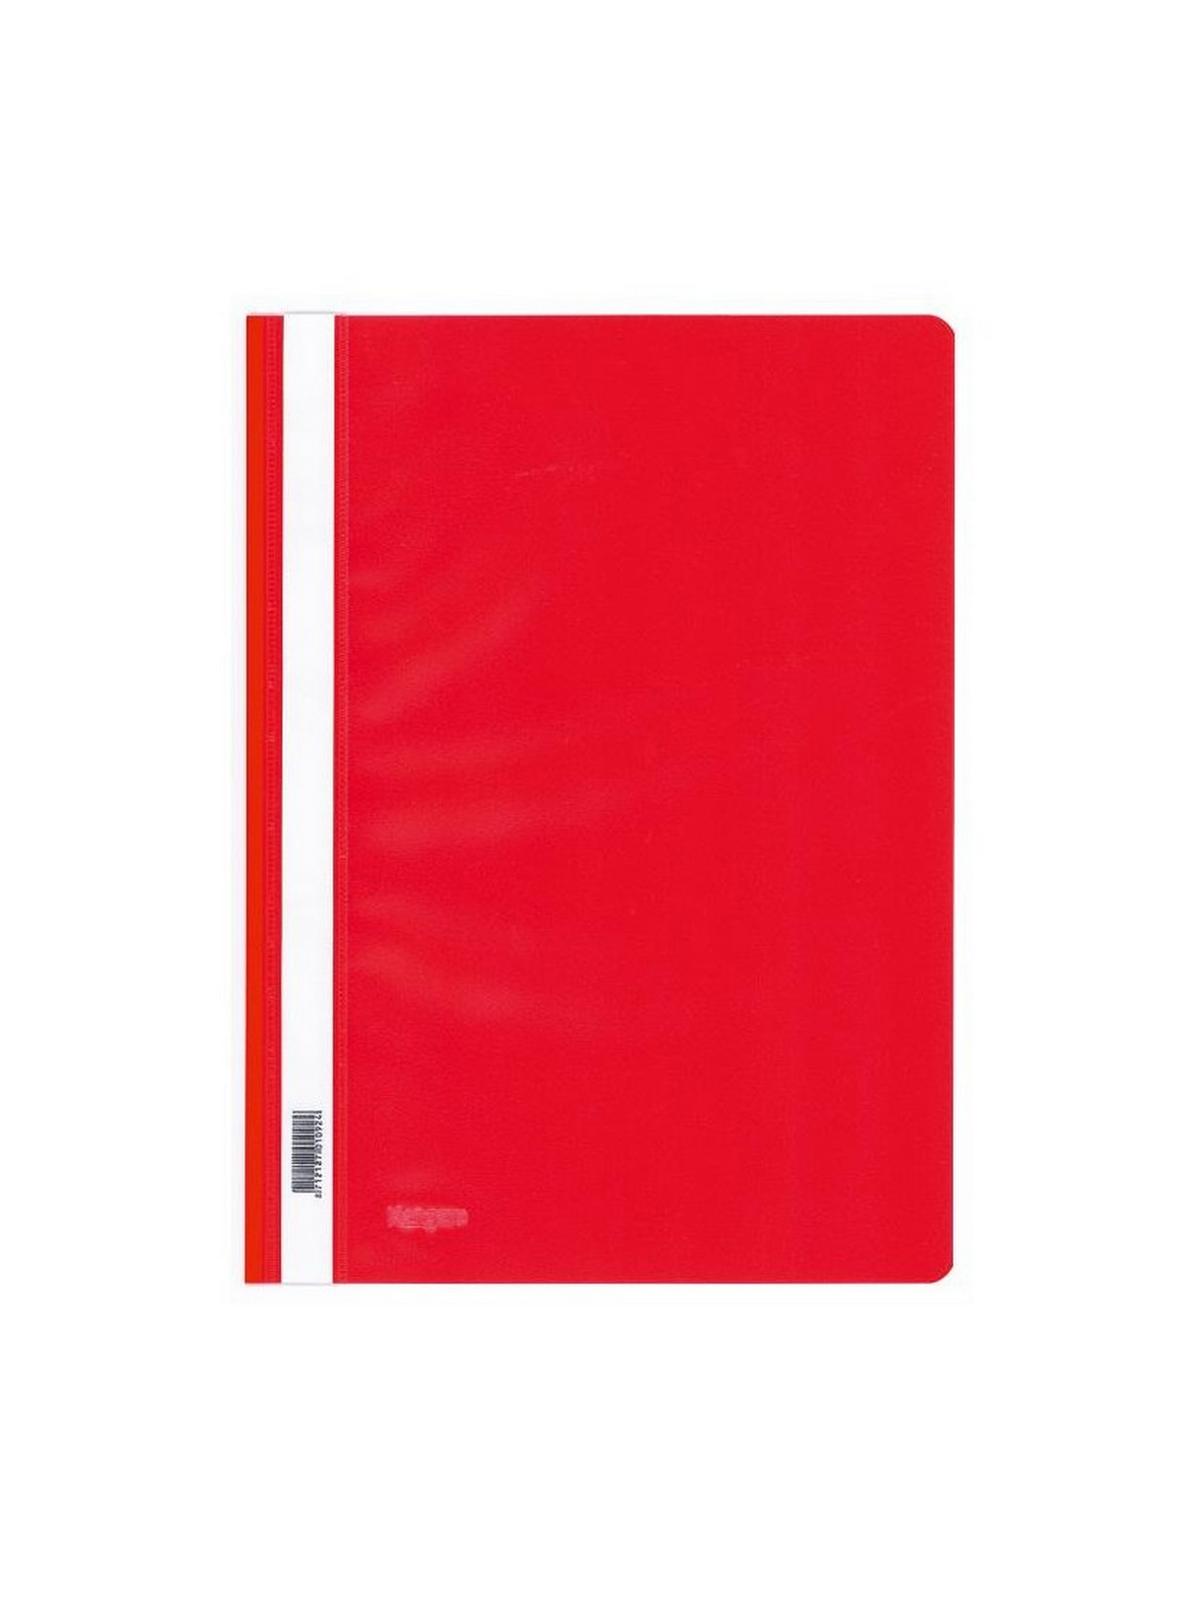 Ντοσιέ πλαστικο με έλασμα pp (Flat Files) κόκκινο